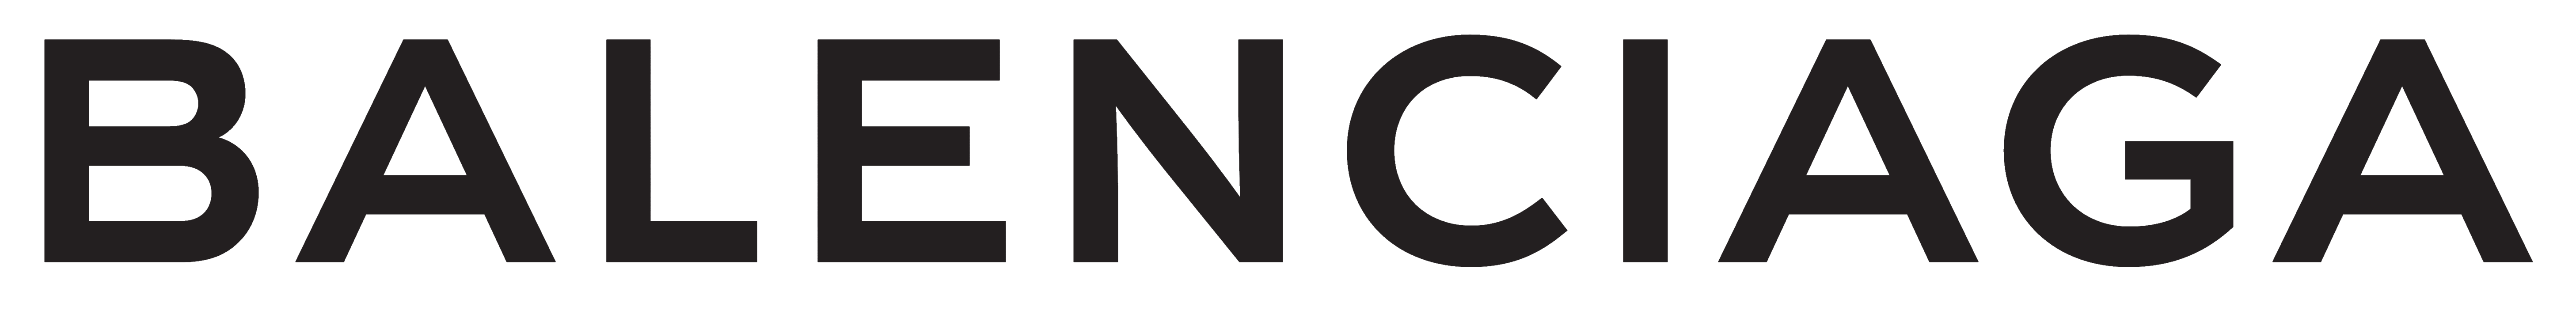 Balenciaga logo, logotype